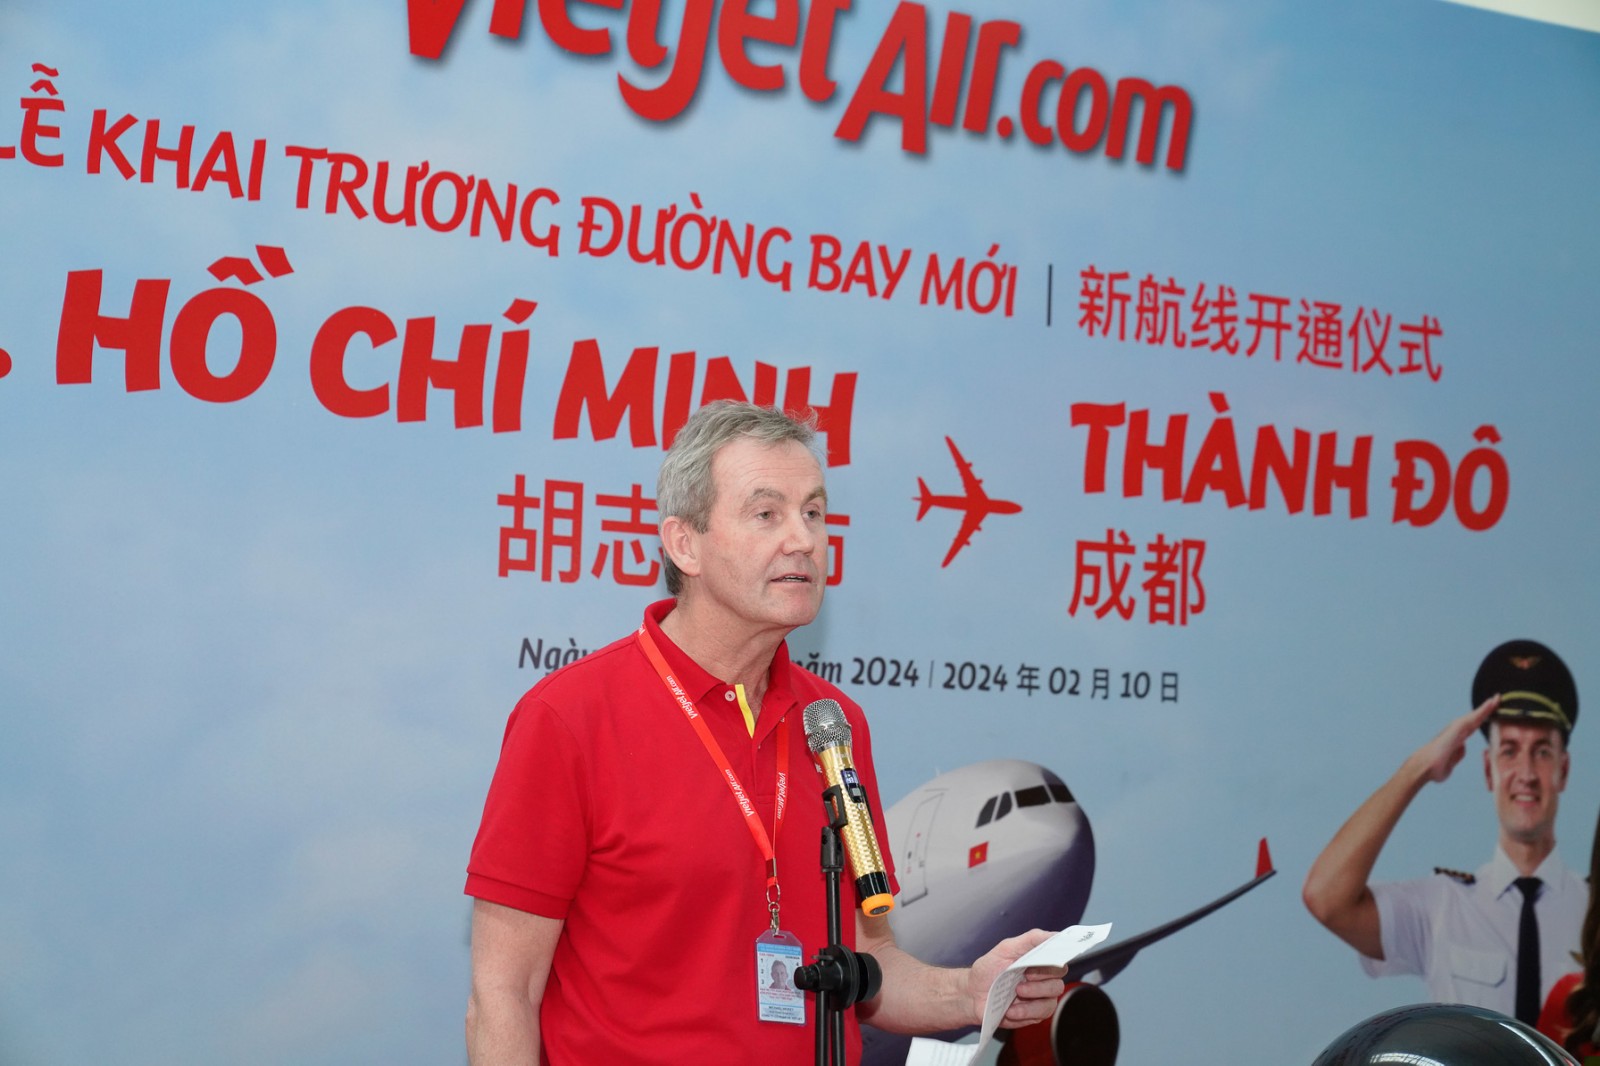 Phó Tổng giám đốc vận hành Vietjet Micheal Hickey công bố khai trương đường bay tại TP. Hồ Chí Minh.